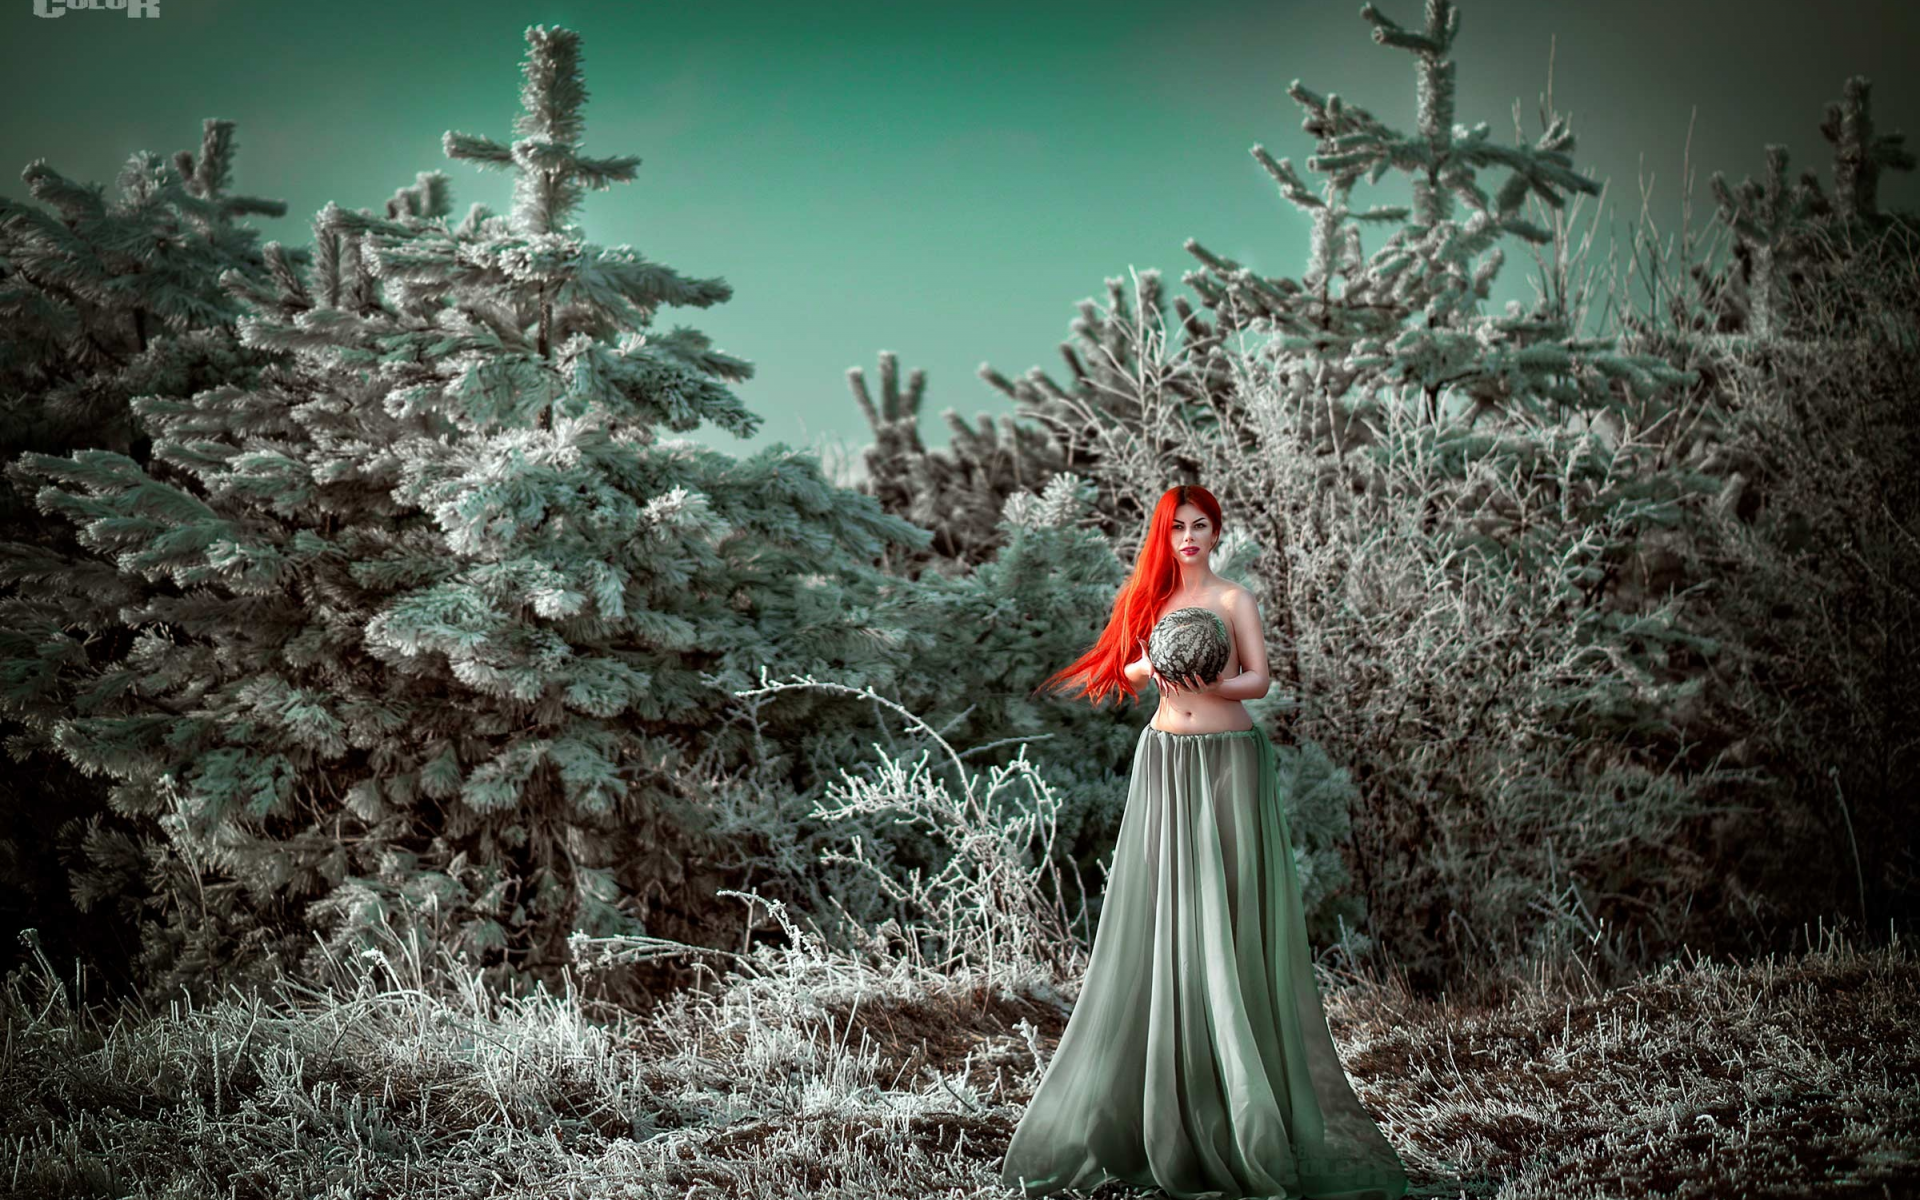 Фф и в морозном лесу я навеки. Сюрреализм снежного леса. Девушка в длинном на фоне деревьев с инеем. Заиндевевшая.